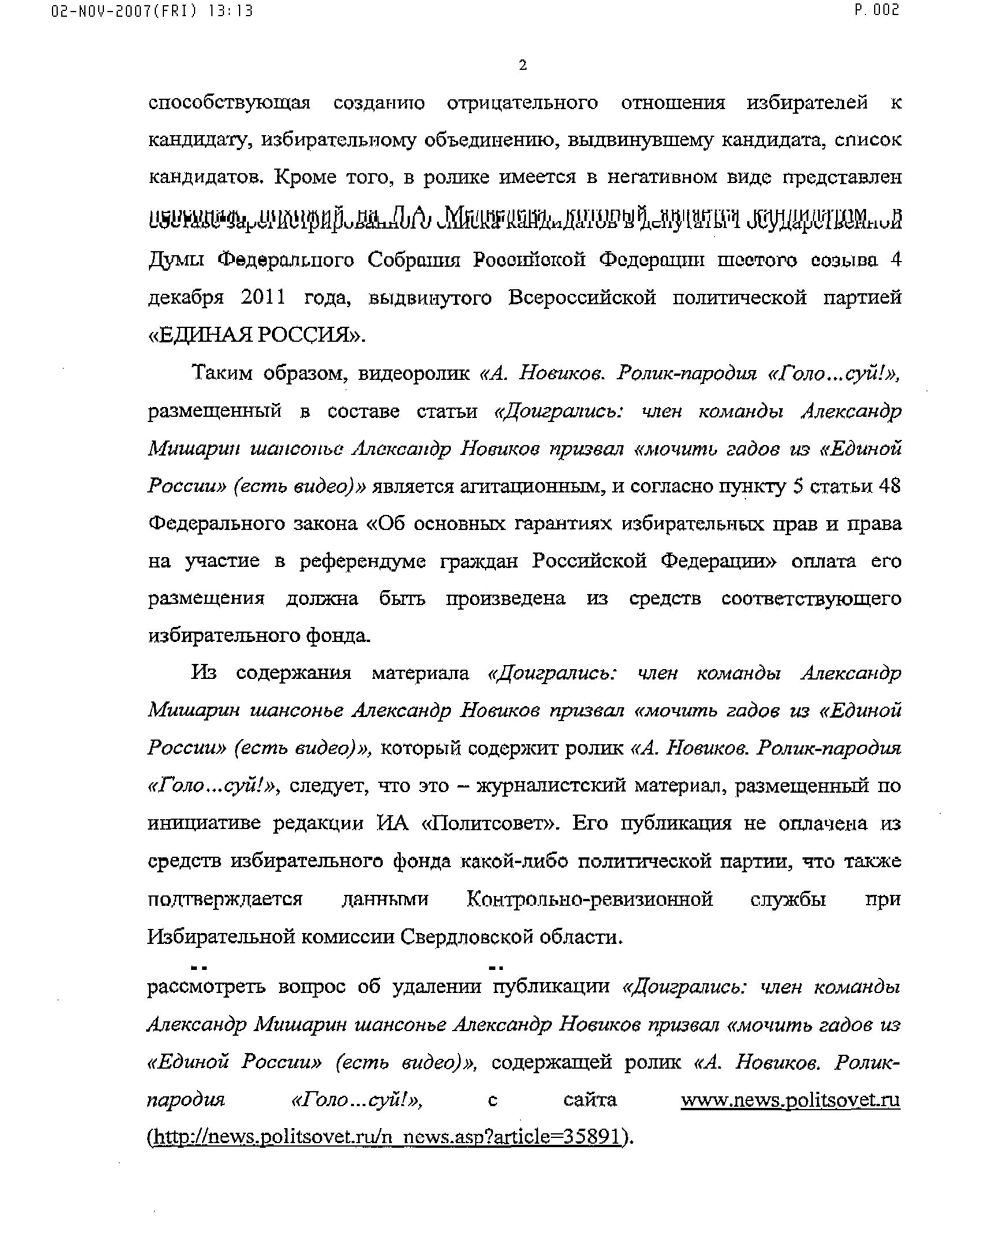 Страсти вокруг ролика Александра Новикова про «жуликов и воров» накаляются